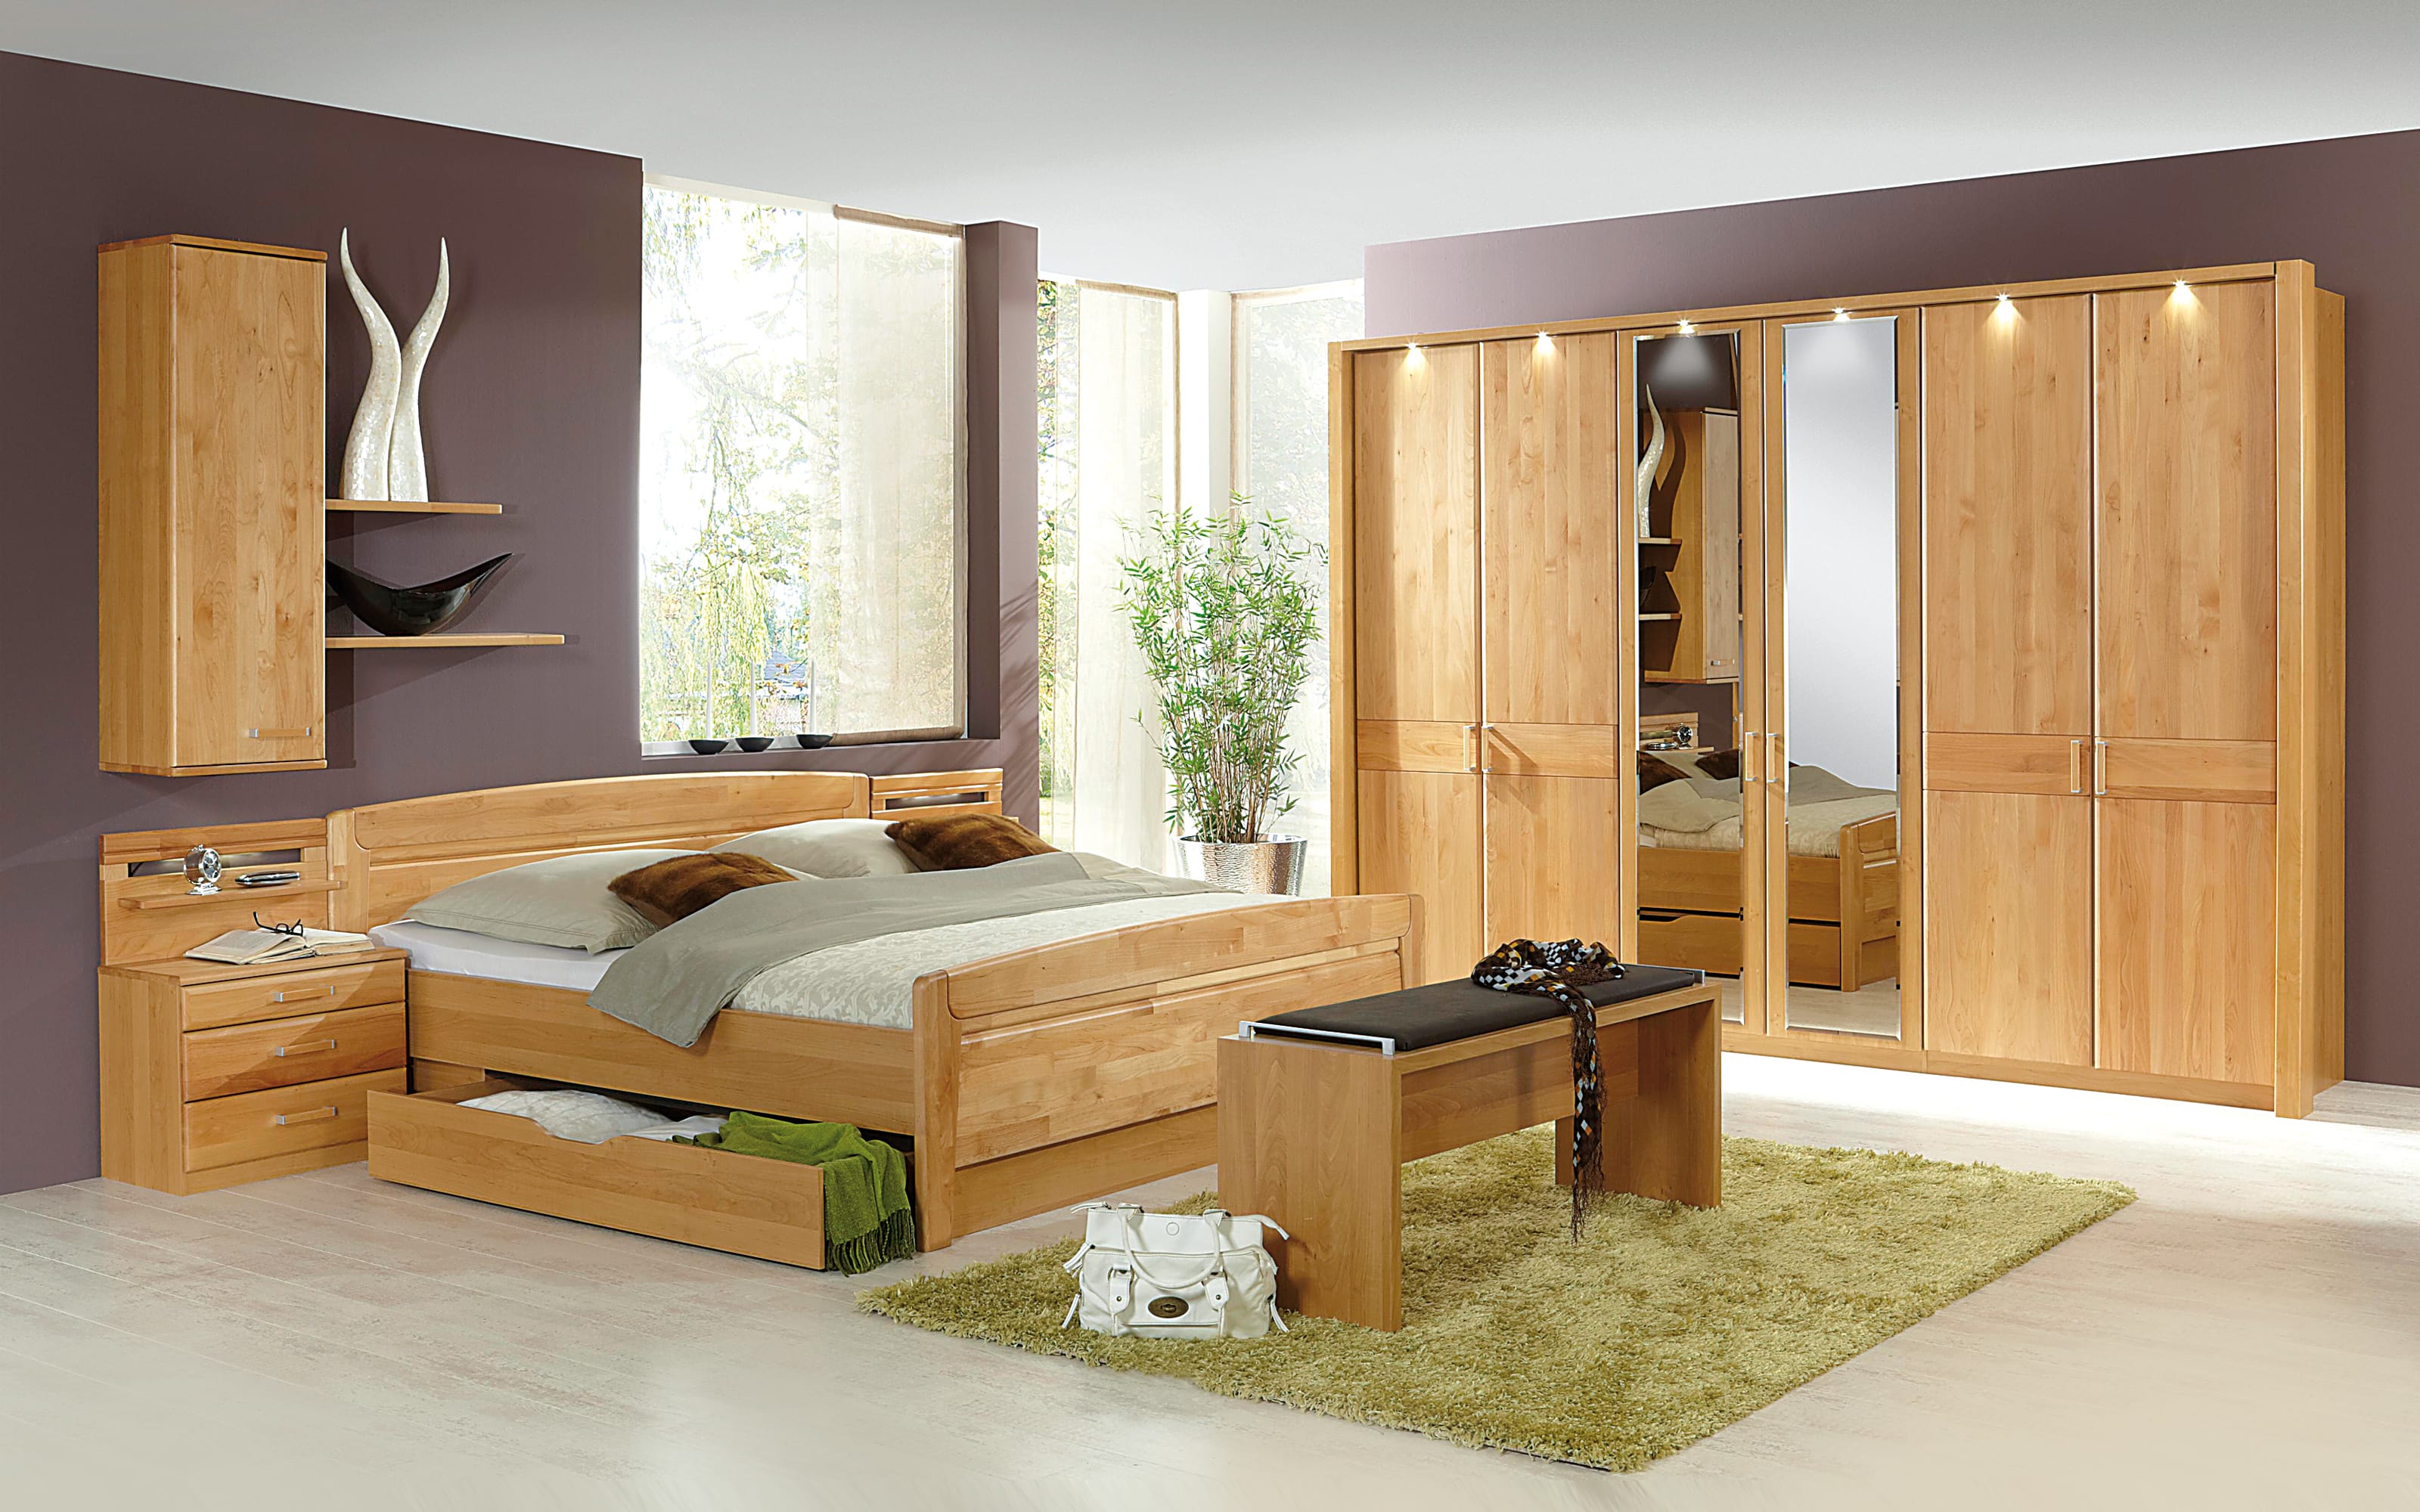 Komfort-Doppelbett Lausanne, Erle teilmassiv, 180 online kaufen bei Hardeck 200 cm x